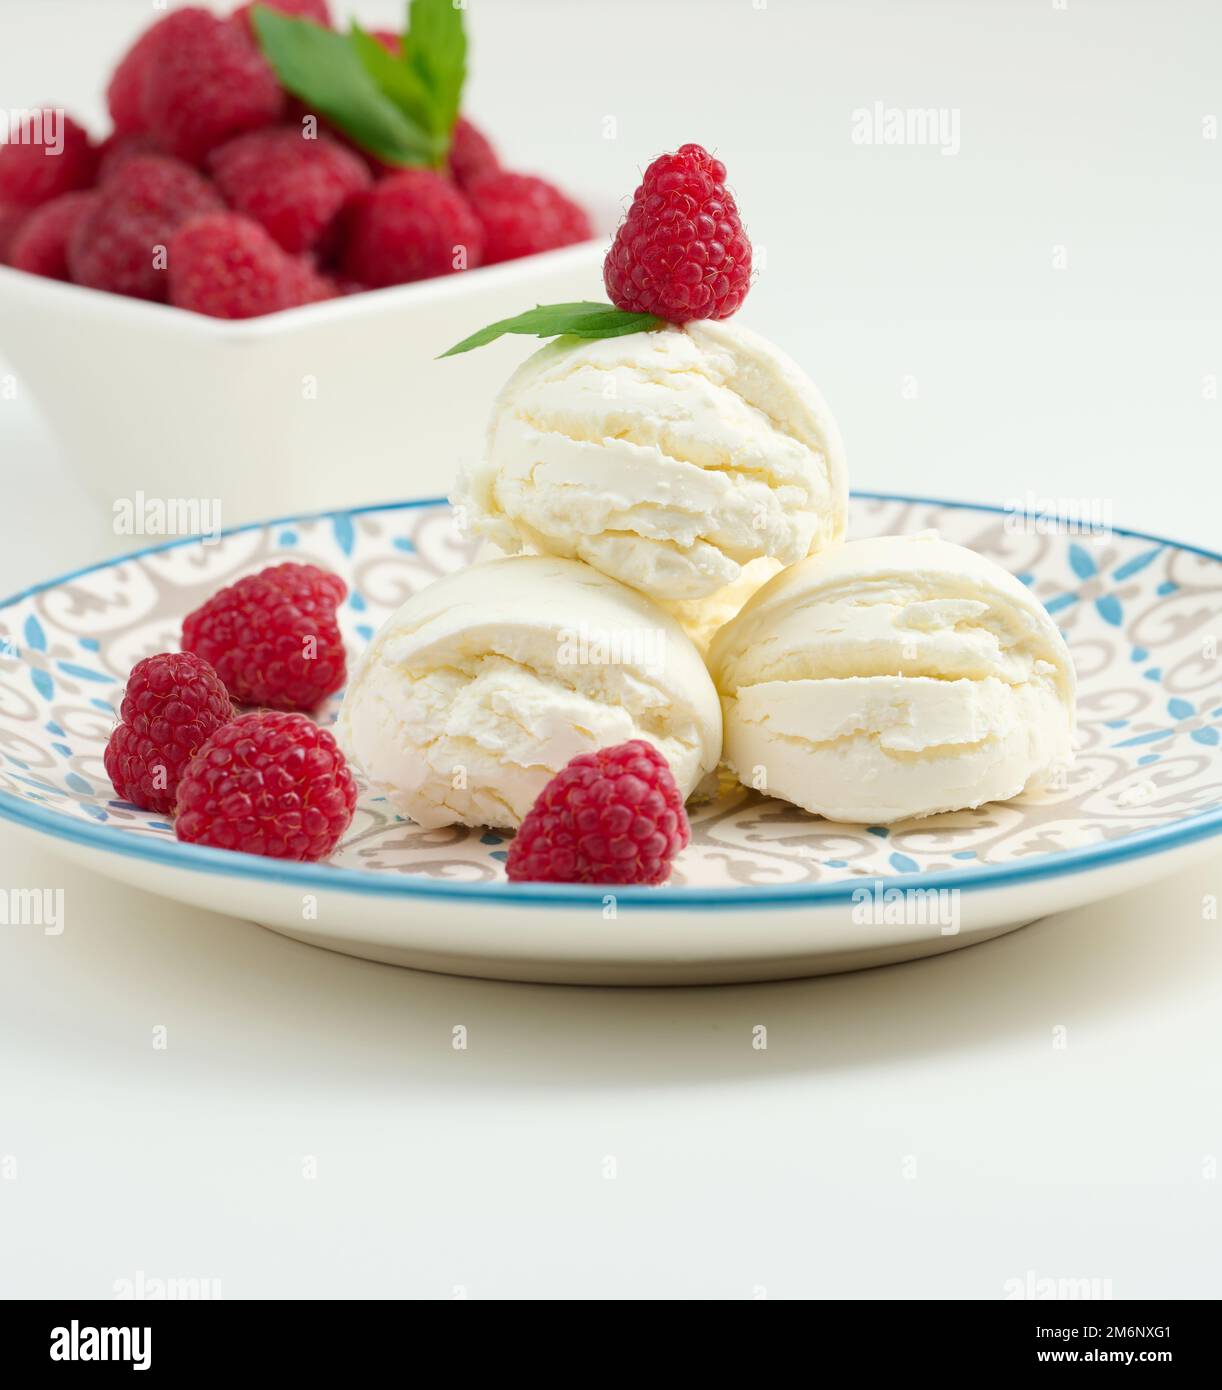 Boules de glace à la vanille aux framboises rouges dans une assiette ronde Banque D'Images